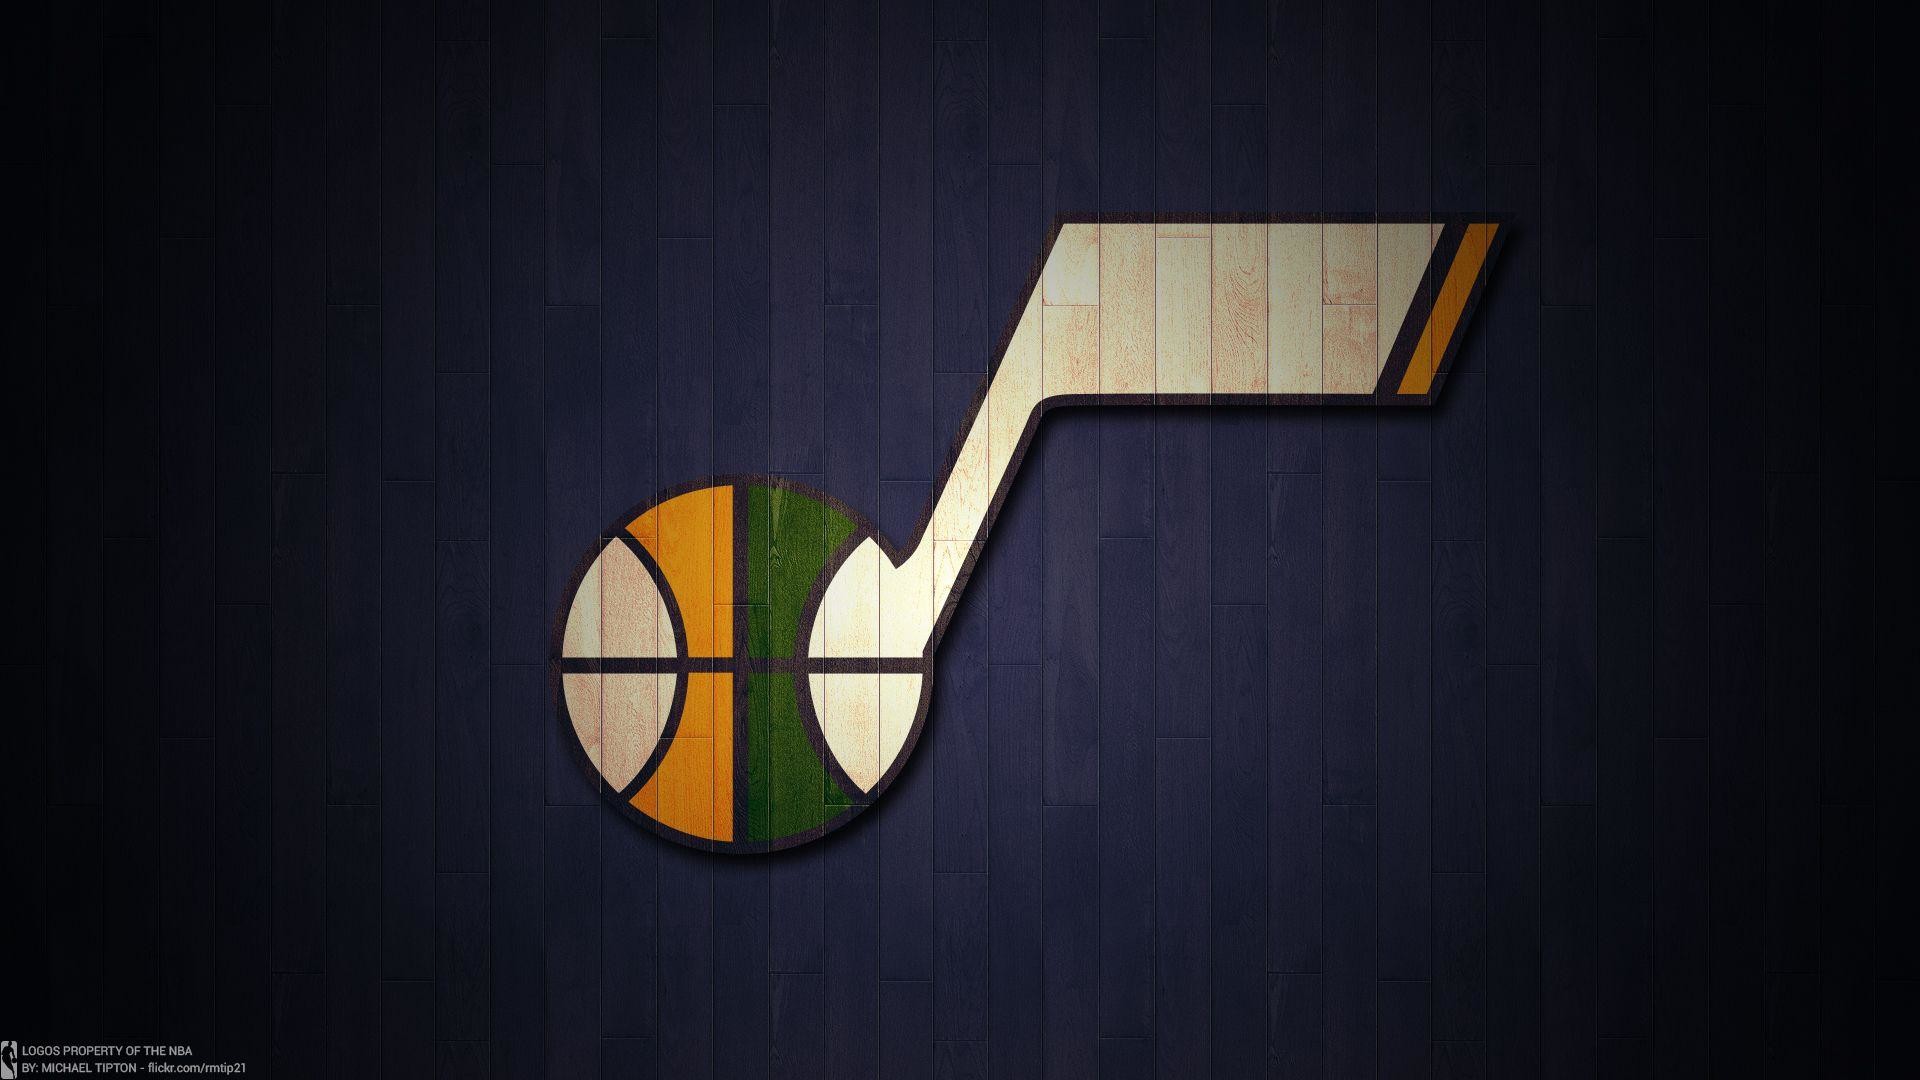 Utah Jazz Wallpaper  Utah Jazz  NBAcom